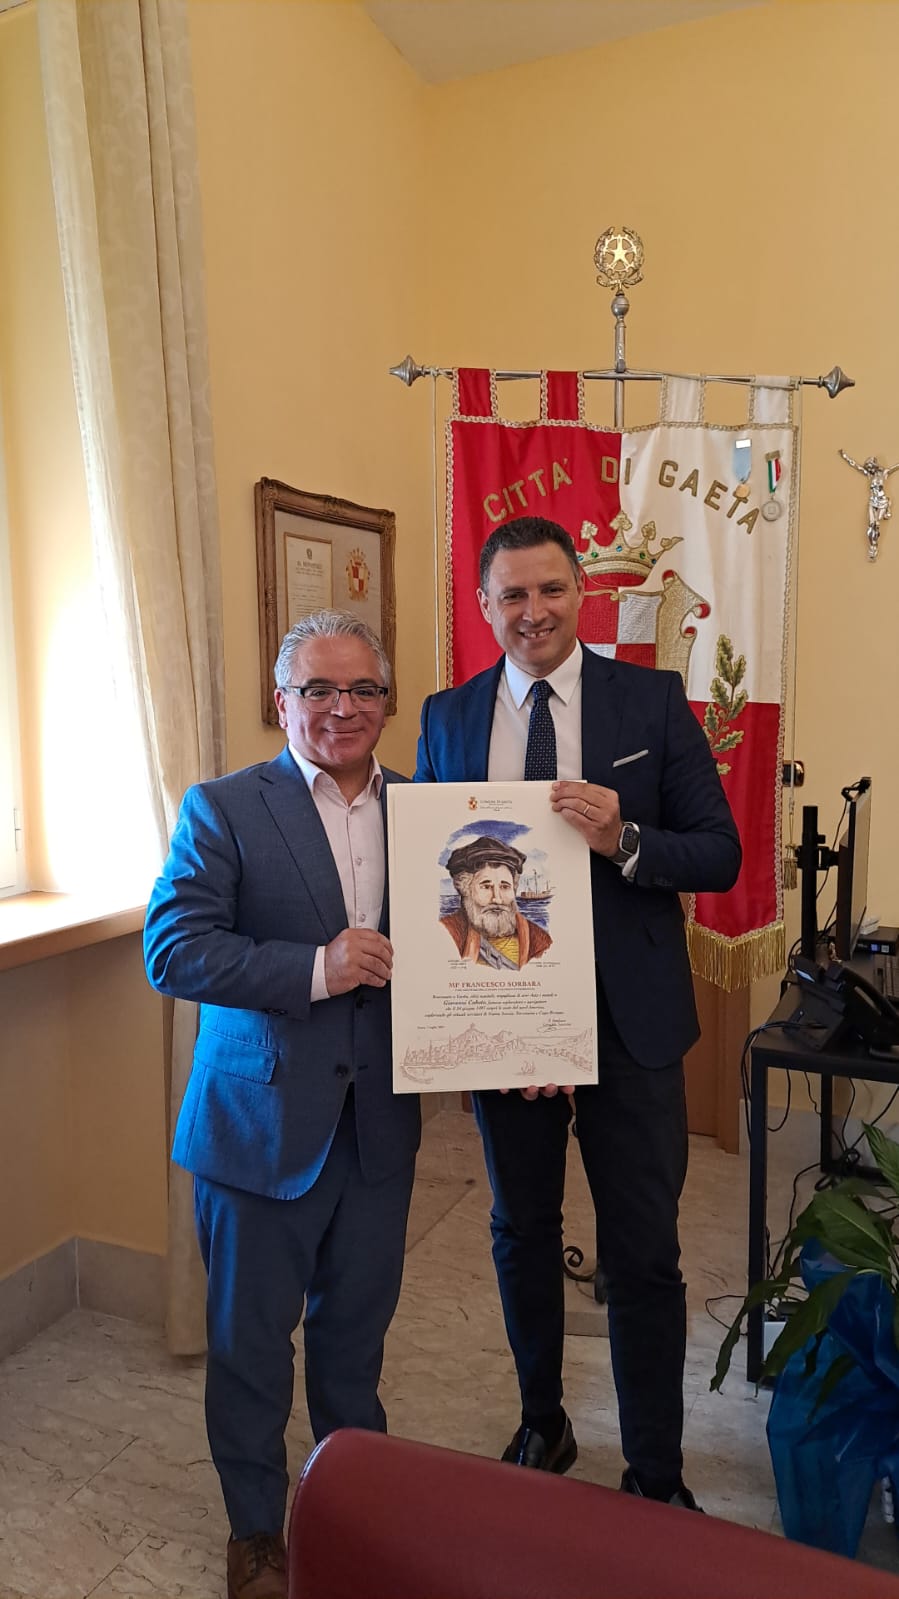 Francesco Sorbara, deputato del parlamento canadese in visita a Gaeta, ricevuto presso il Palazzo Comunale dal sindaco Leccese